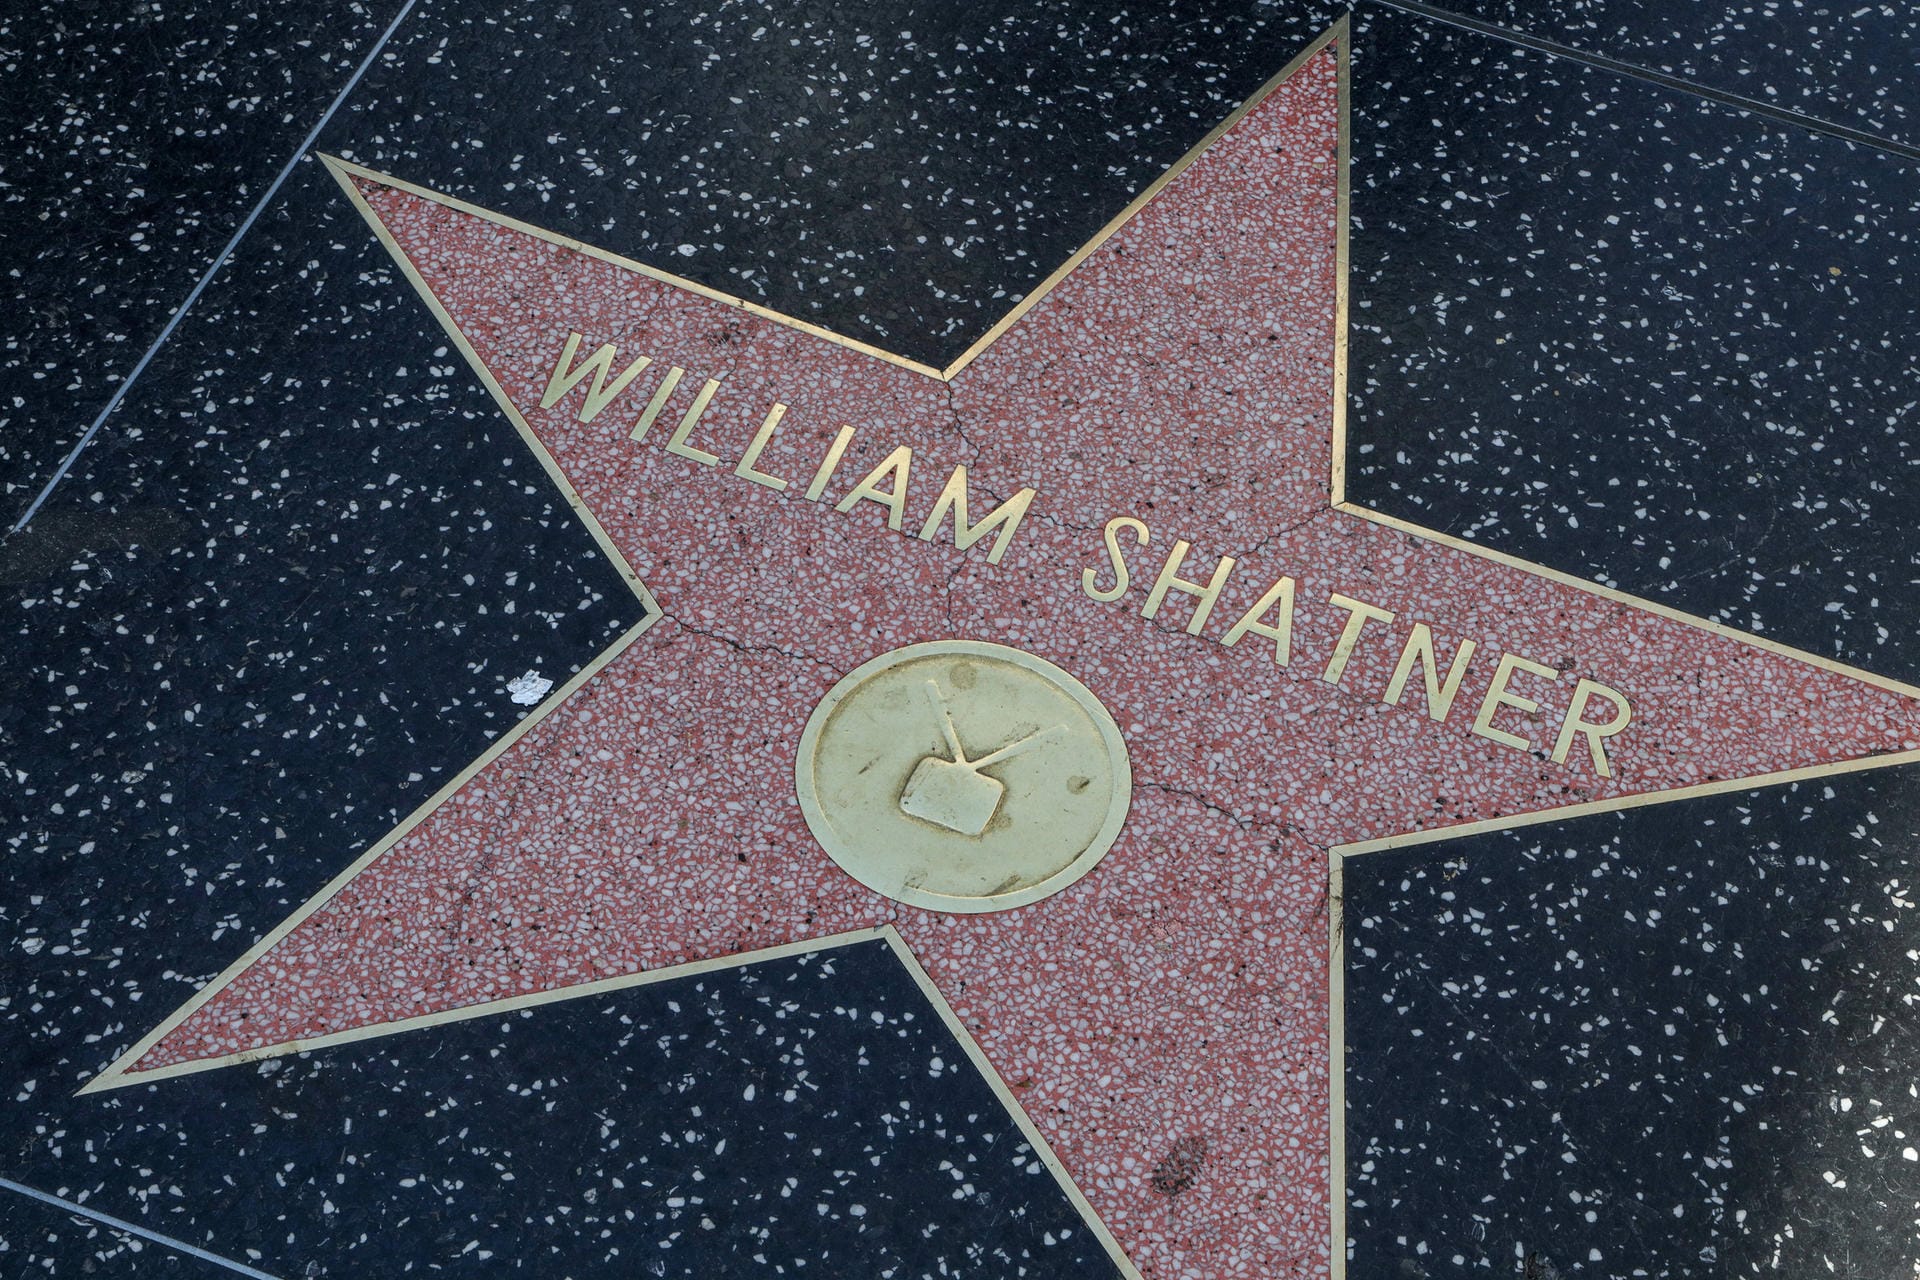 Für seine schauspielerischen Leistungen wurde er mit einem Stern auf dem Walk of Fame in Hollywood geehrt.